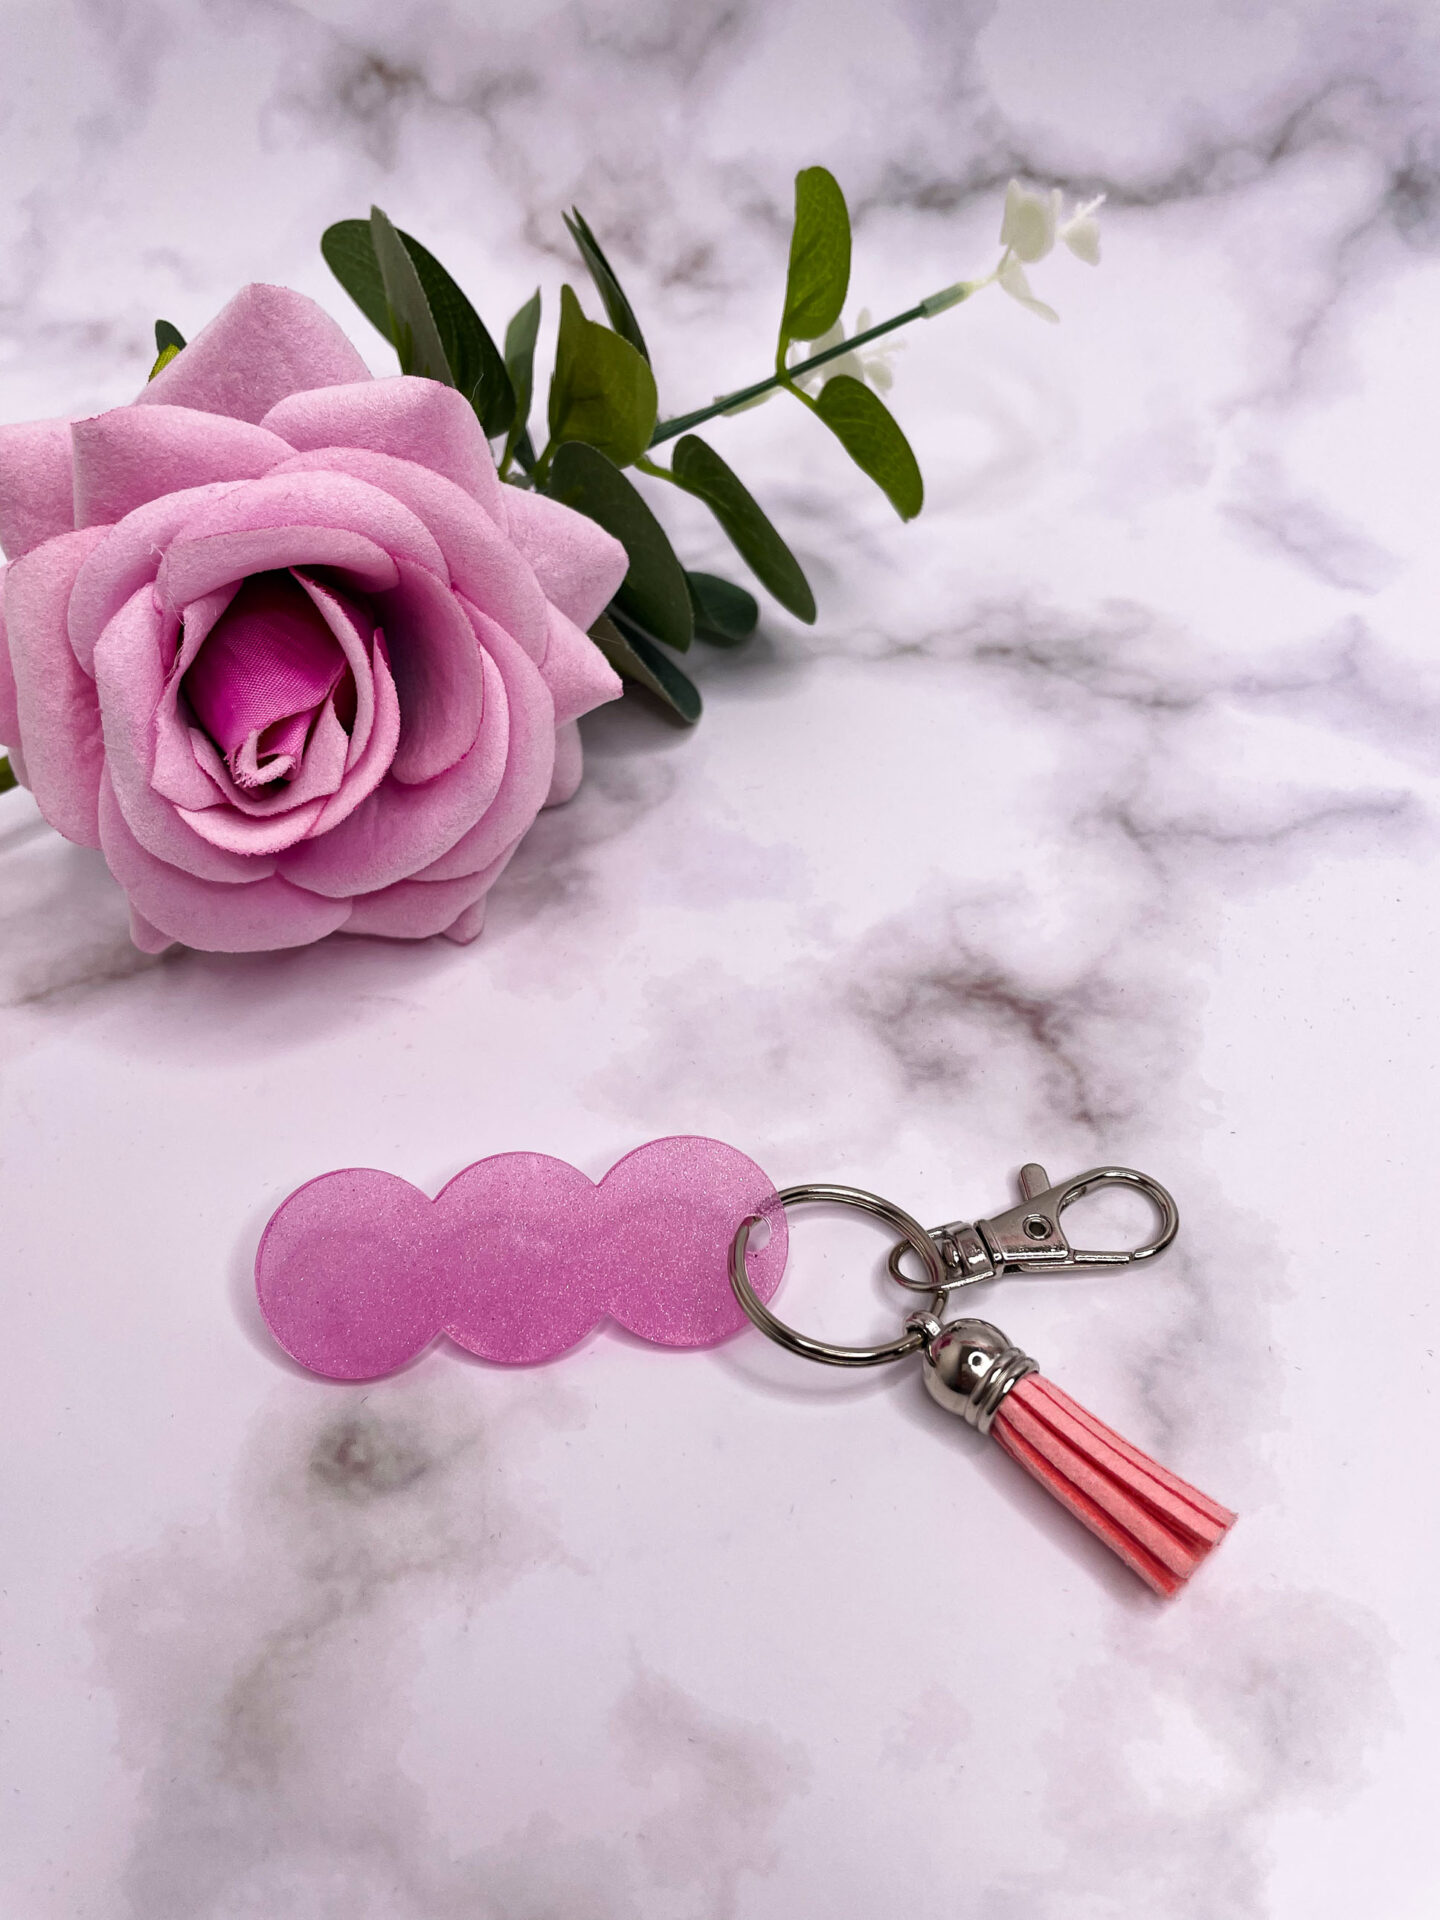 Jeton de caddie - 3 ronds - en porte-clé - rose - boutique idées cadeaux - boutique en ligne - création française et artisanale.